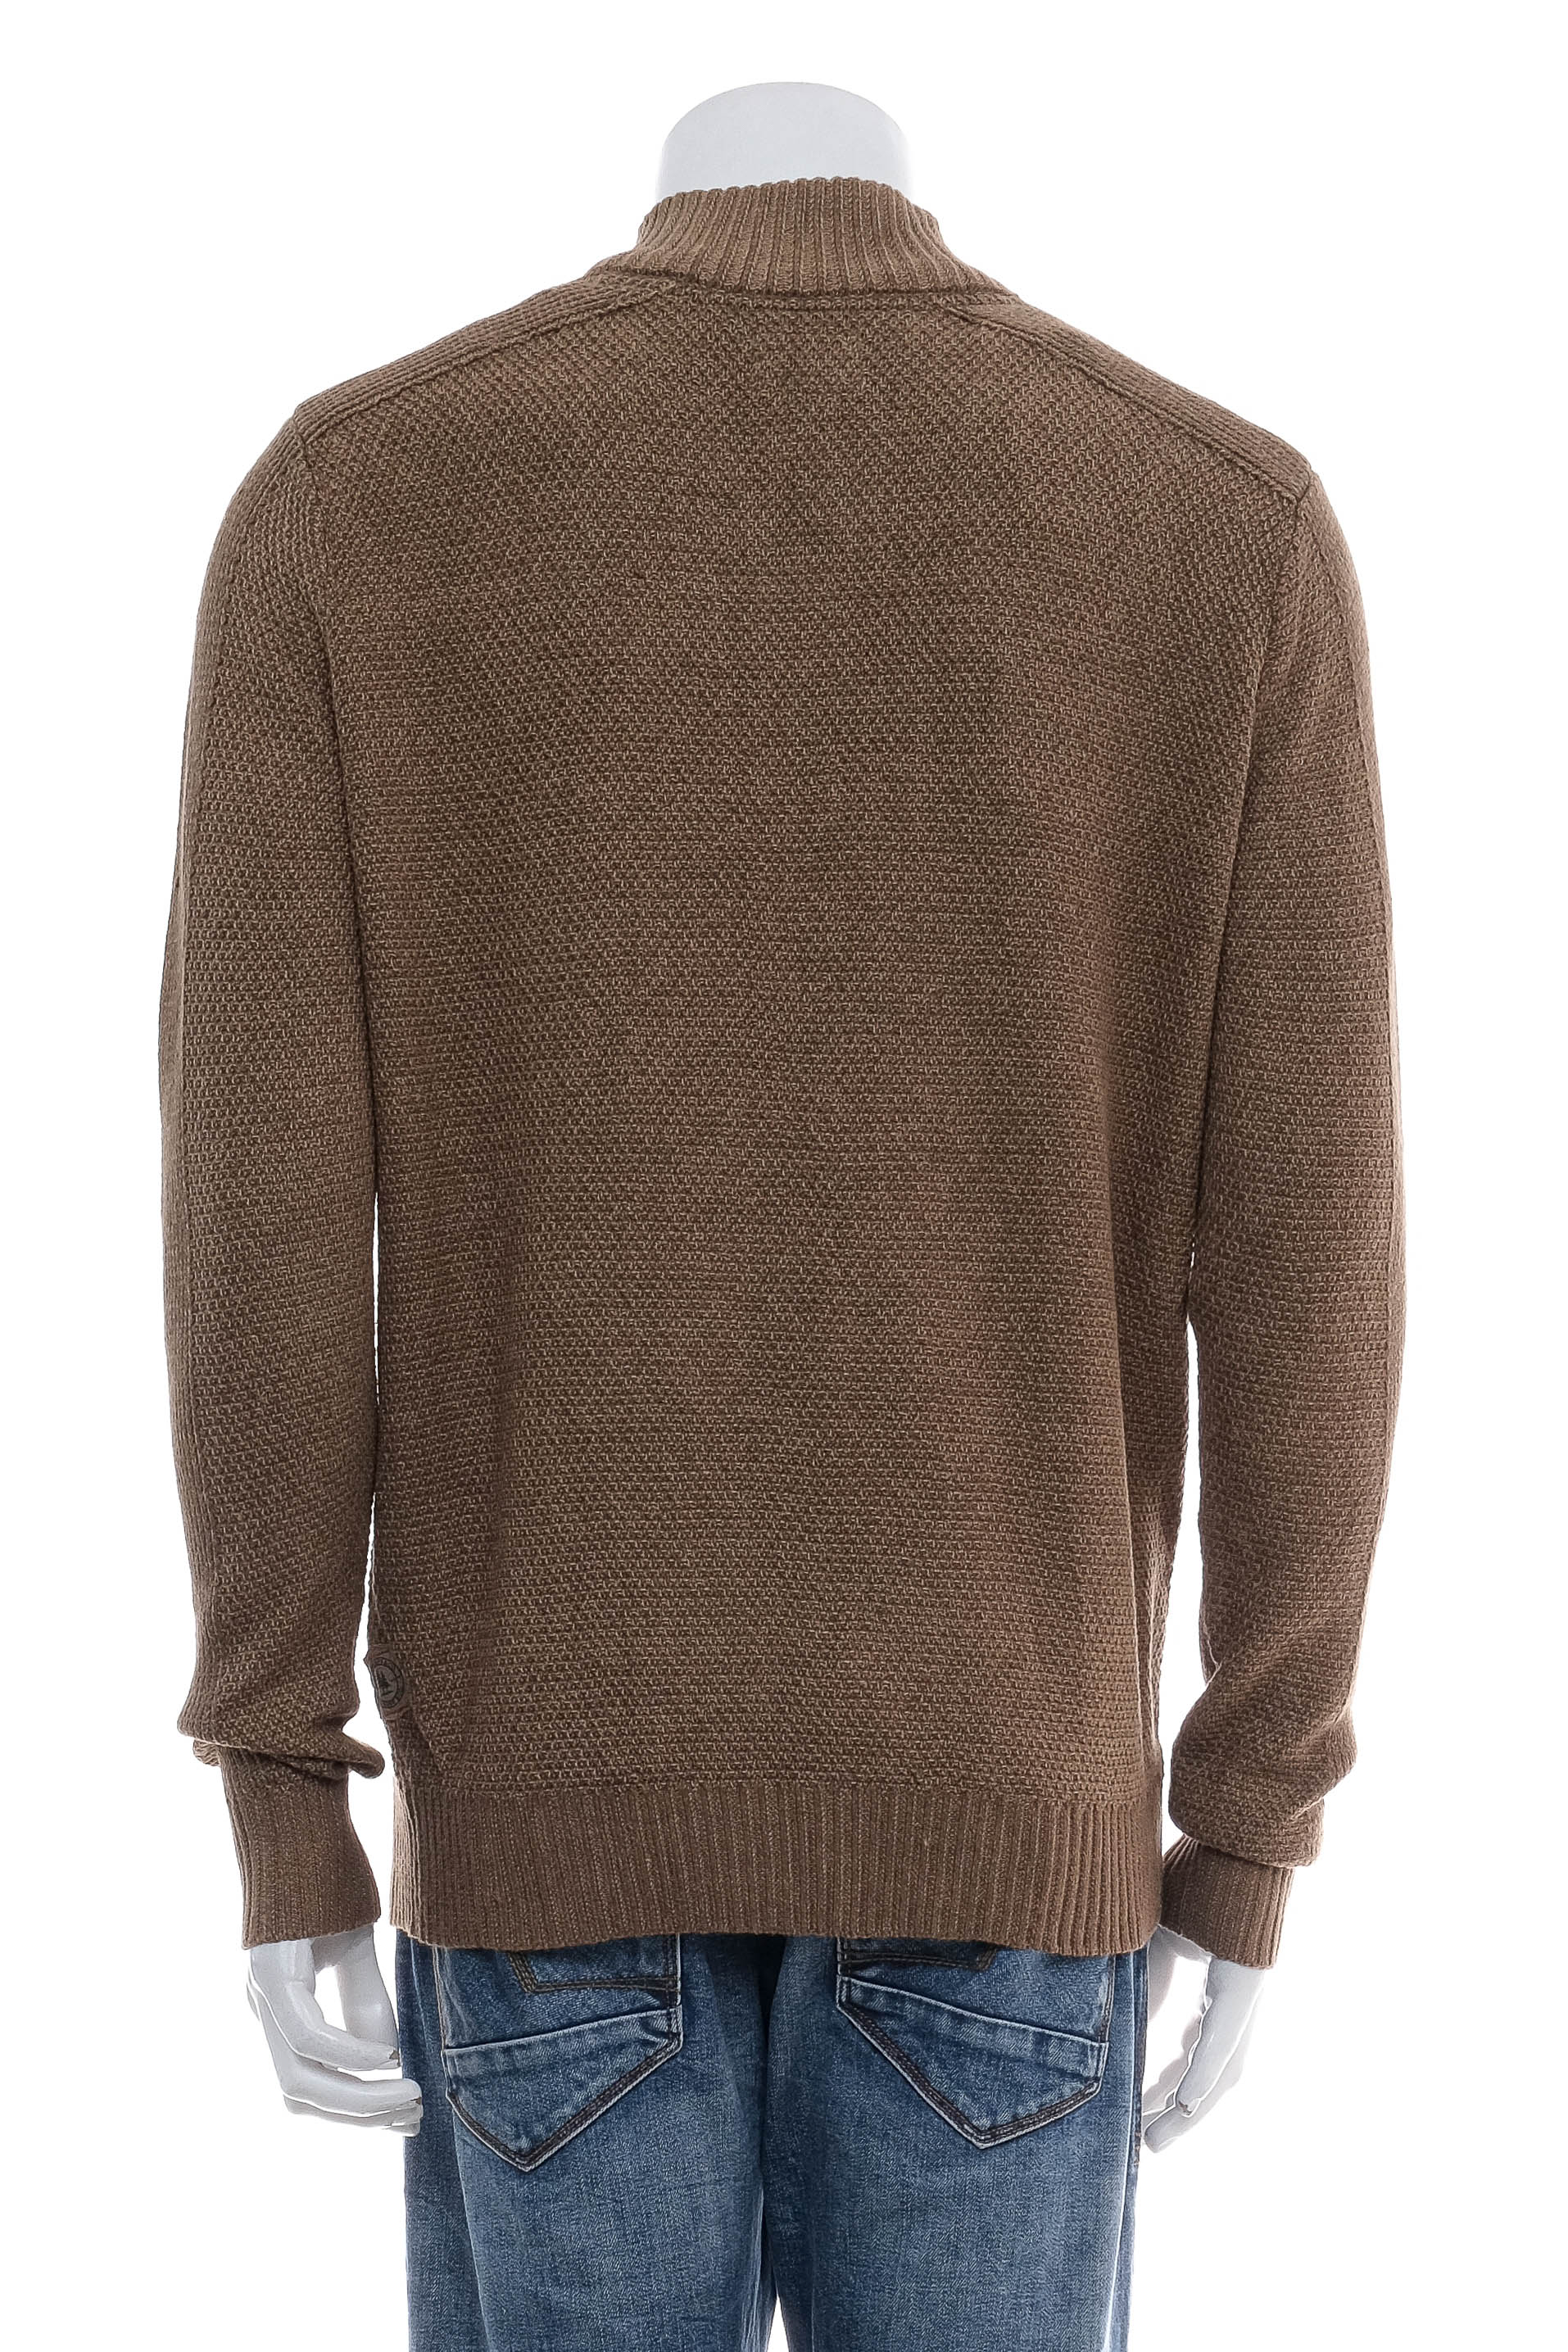 Men's sweater - G.H. Bass & Co. - 1